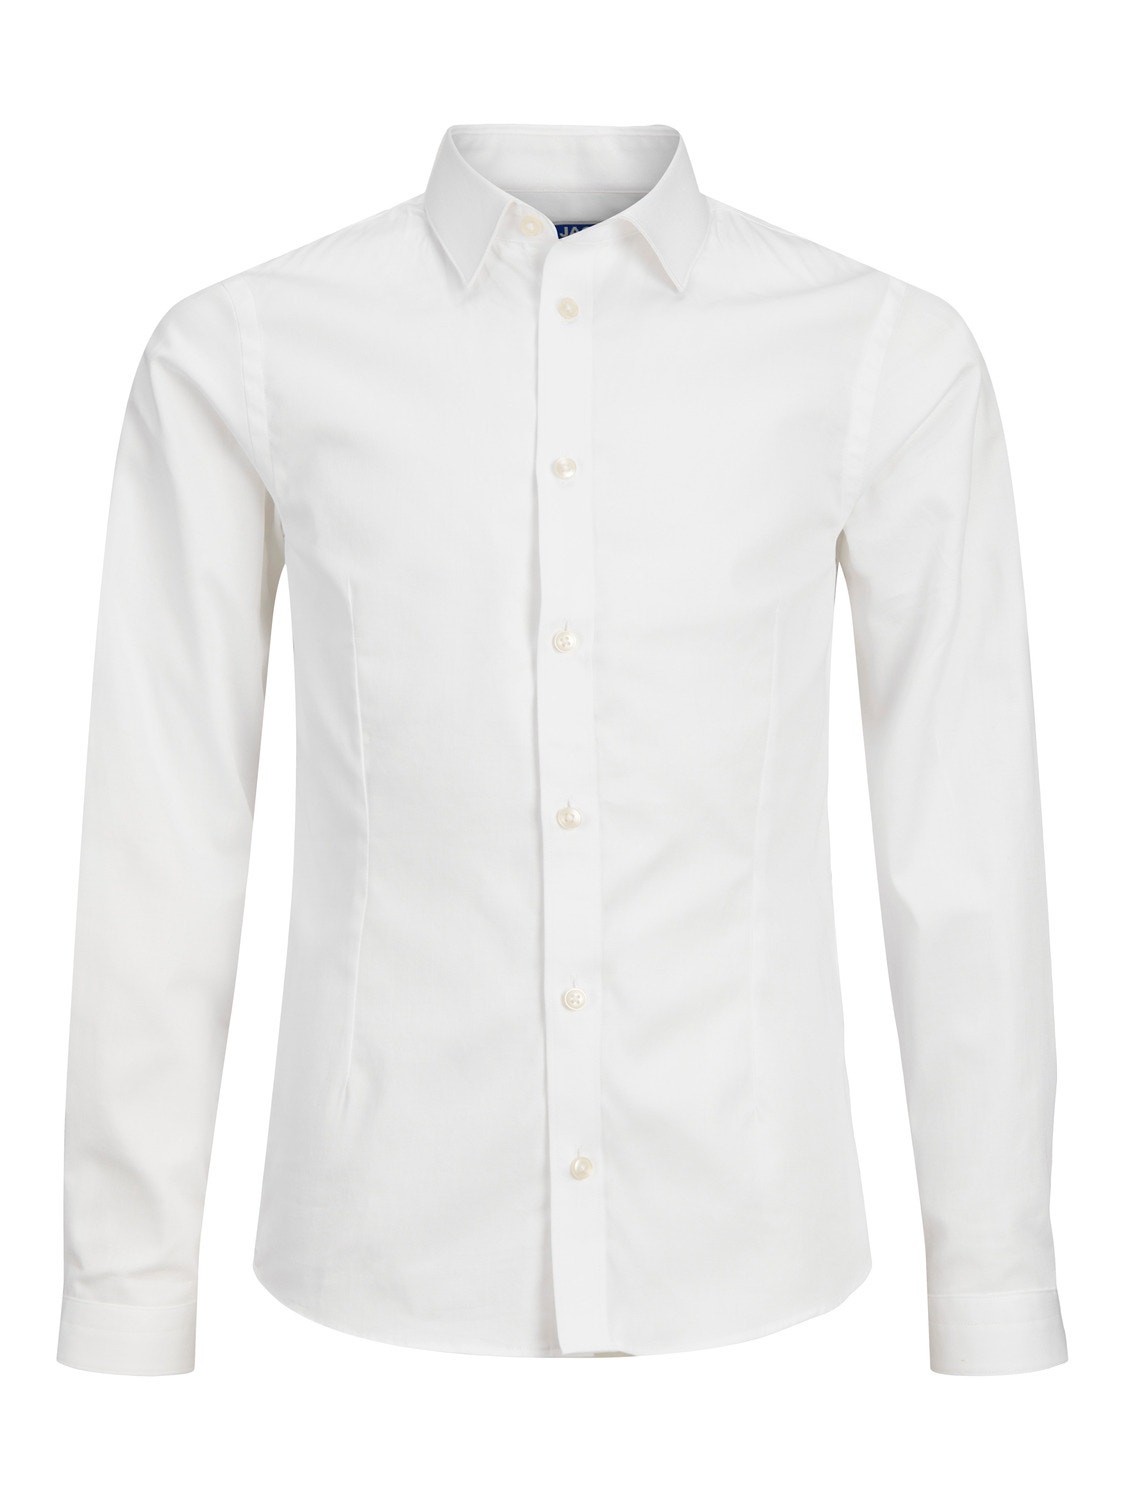 Jack & Jones Chemise habillée Pour les garçons -White - 12151620